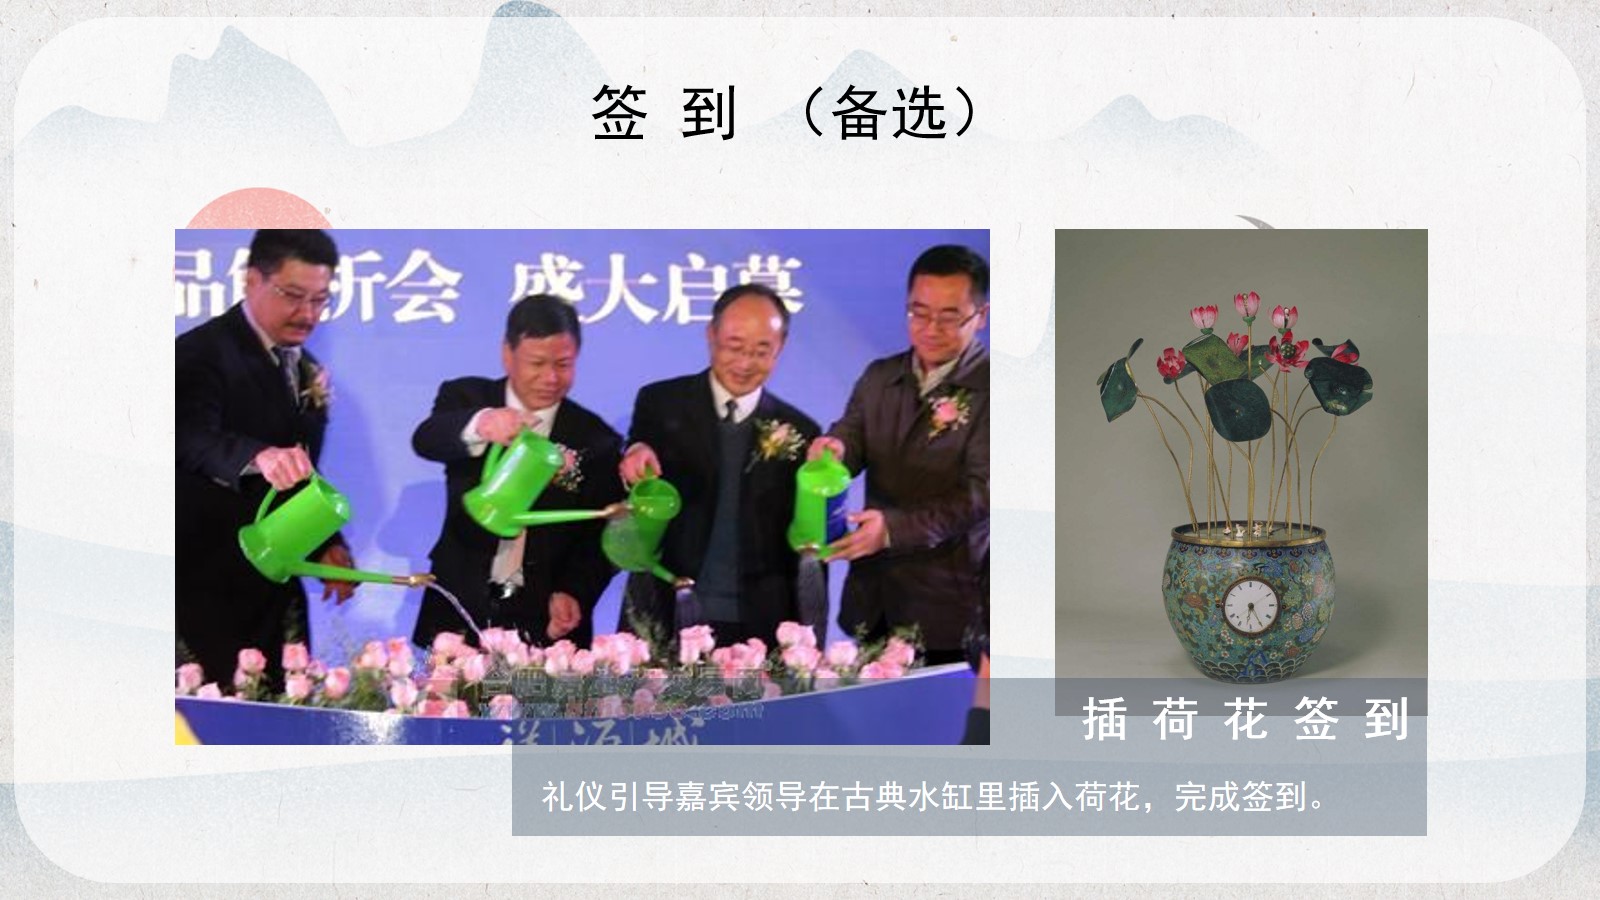 志棠白莲农产品品牌发布会农特馆开馆仪式活动案